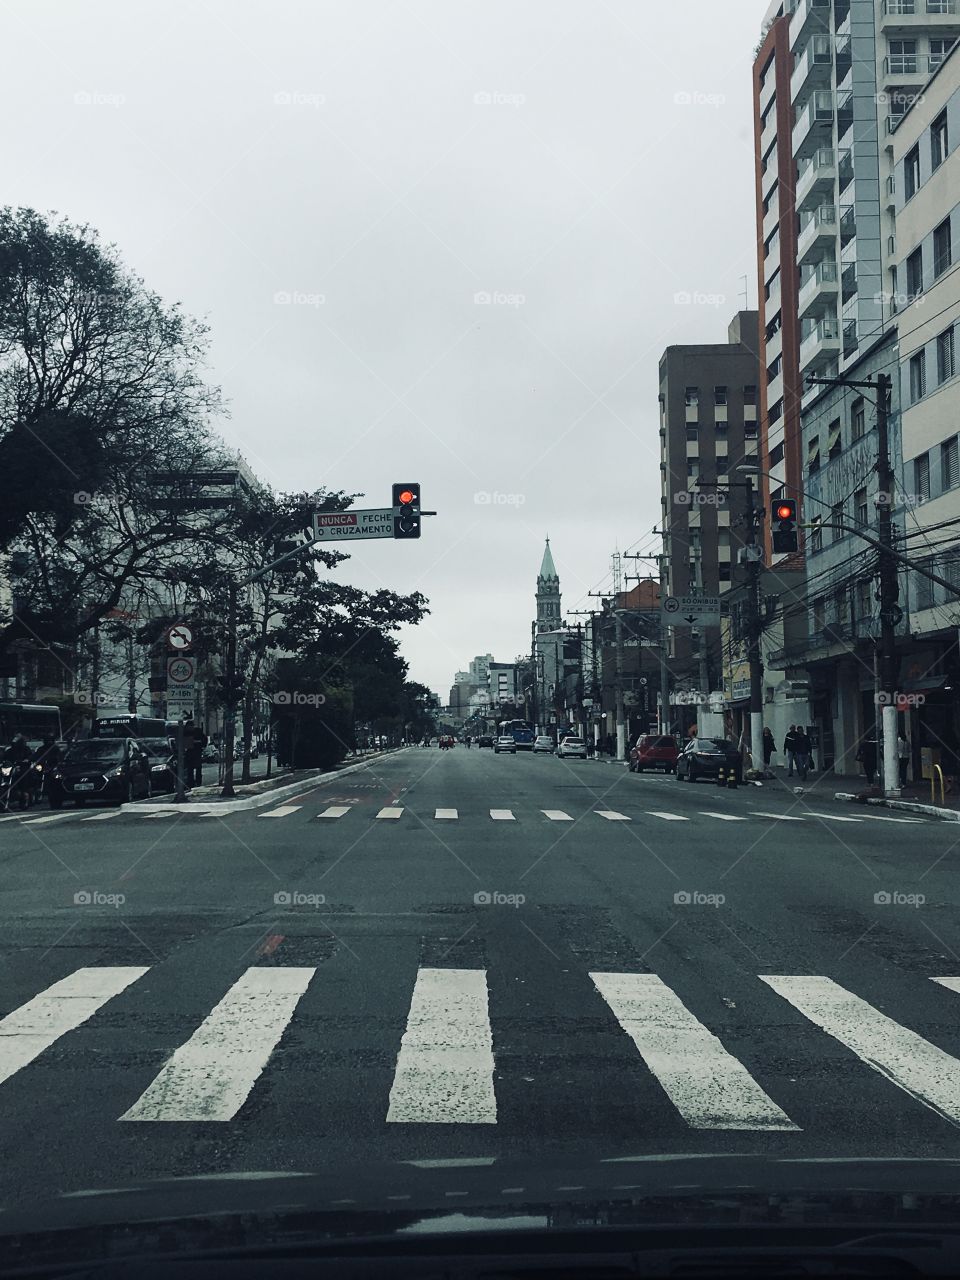 Public roads - São Paulo - Brazil 